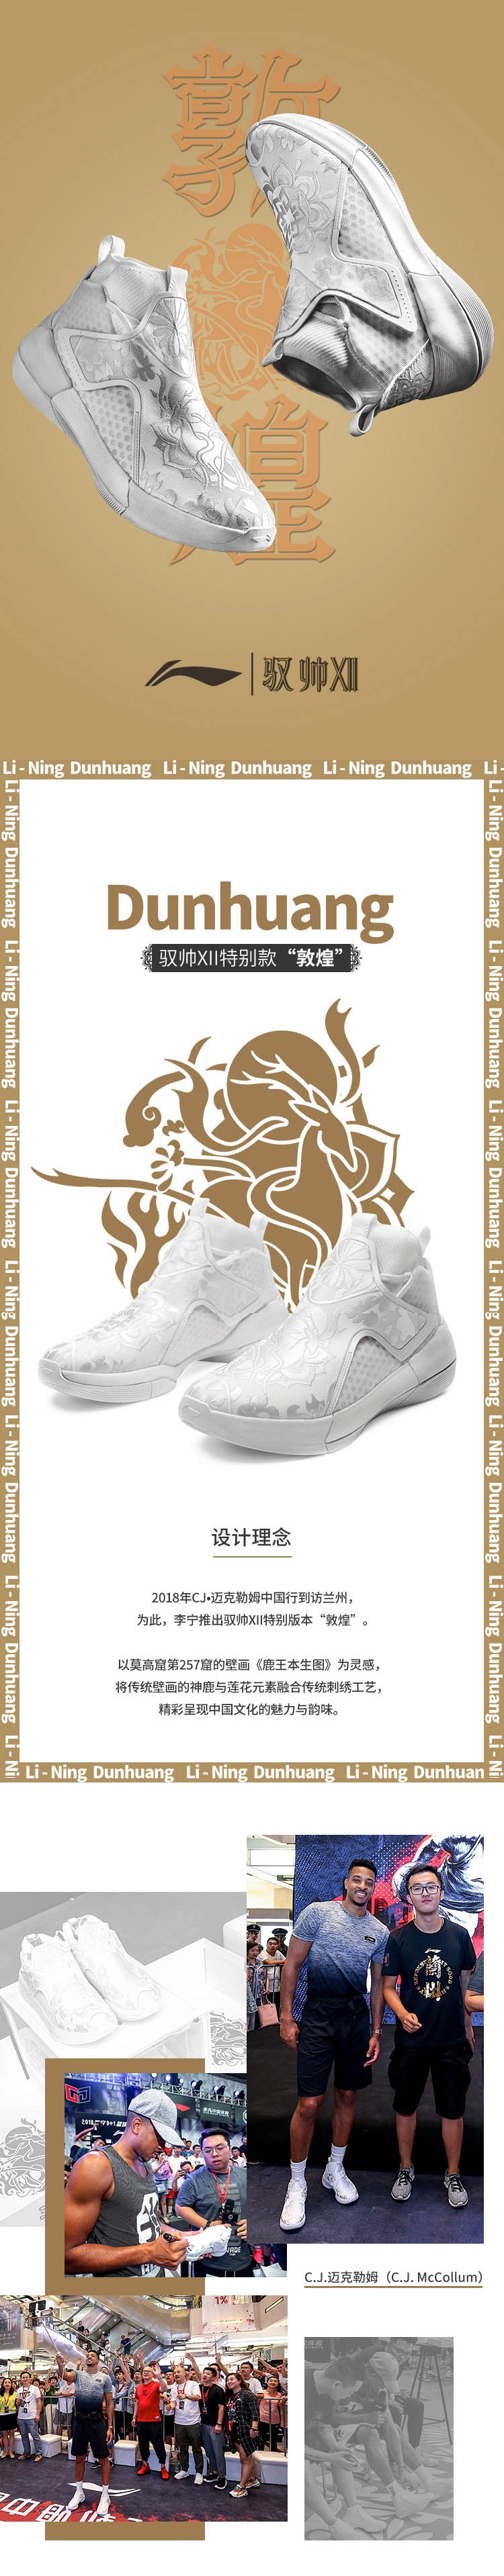 Li-Ning Yushuai XXII 12 "Dunhuang" C.J.McCollum Mens High Top Professional basketball Sneakers